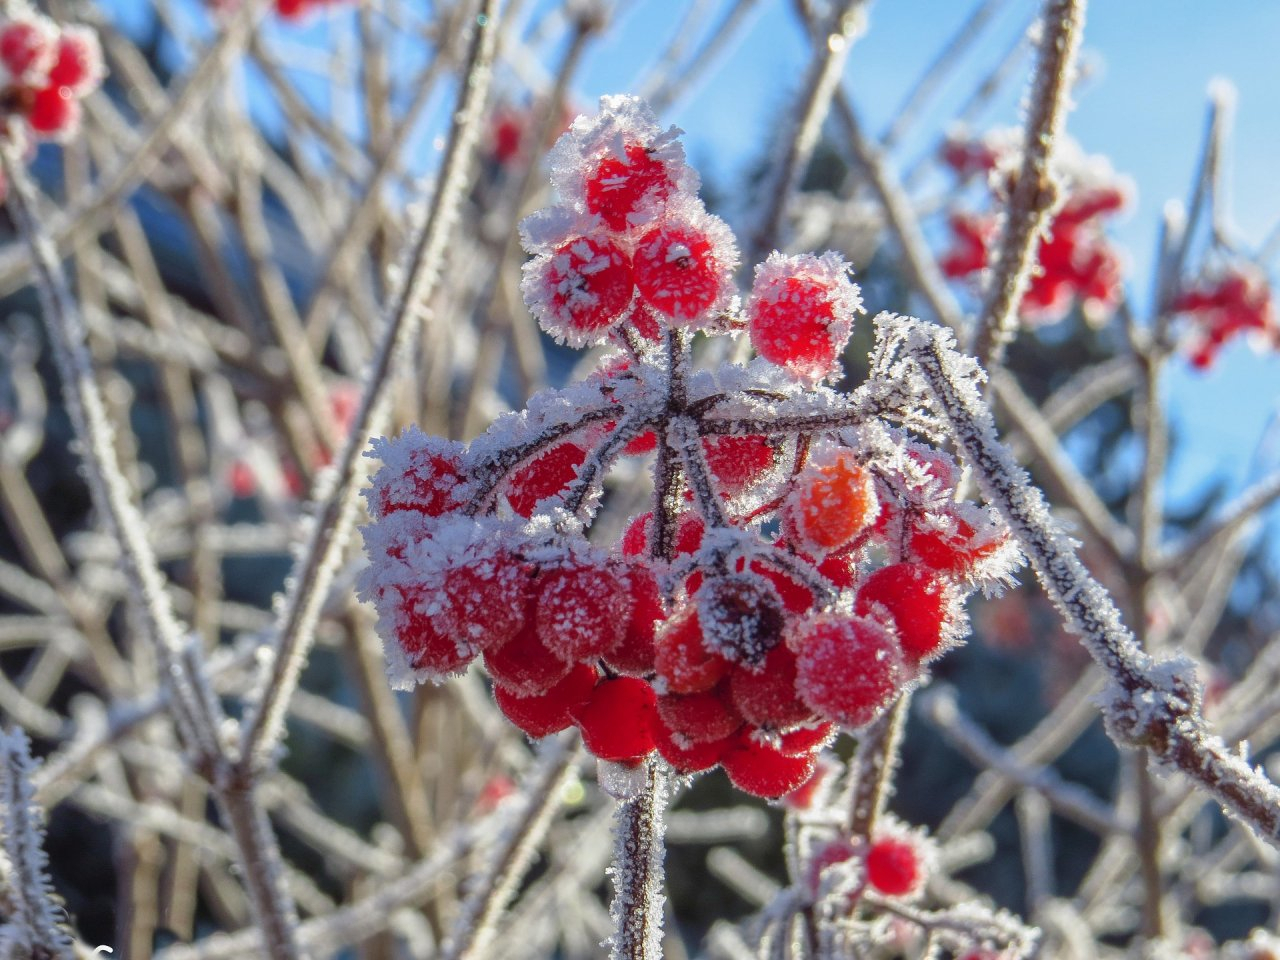 Зима пришла: мороз до -10 градусов ожидает нижегородцев в выходные